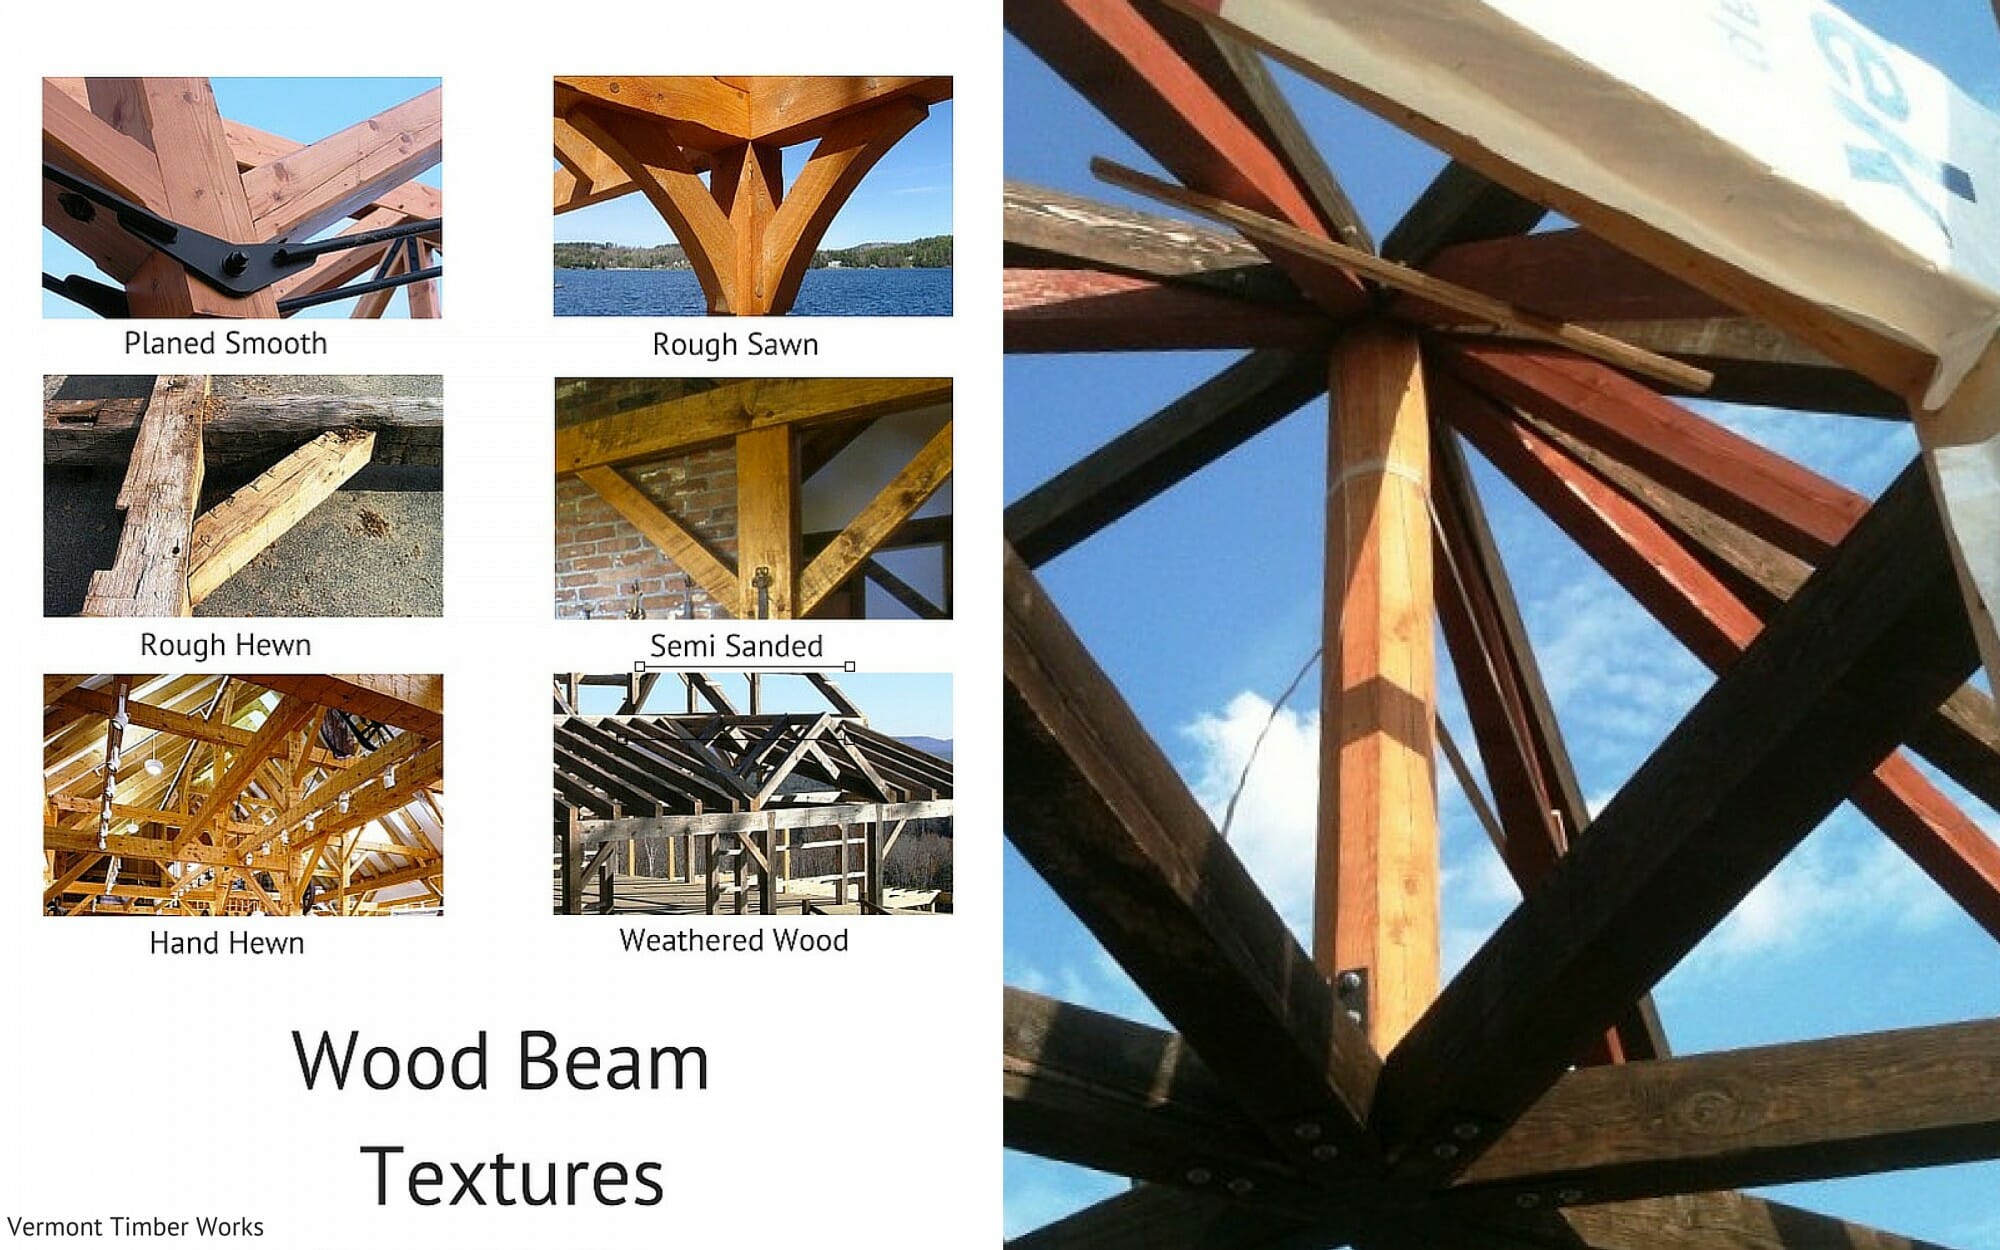 Wood Beam Texture Semi Sanded